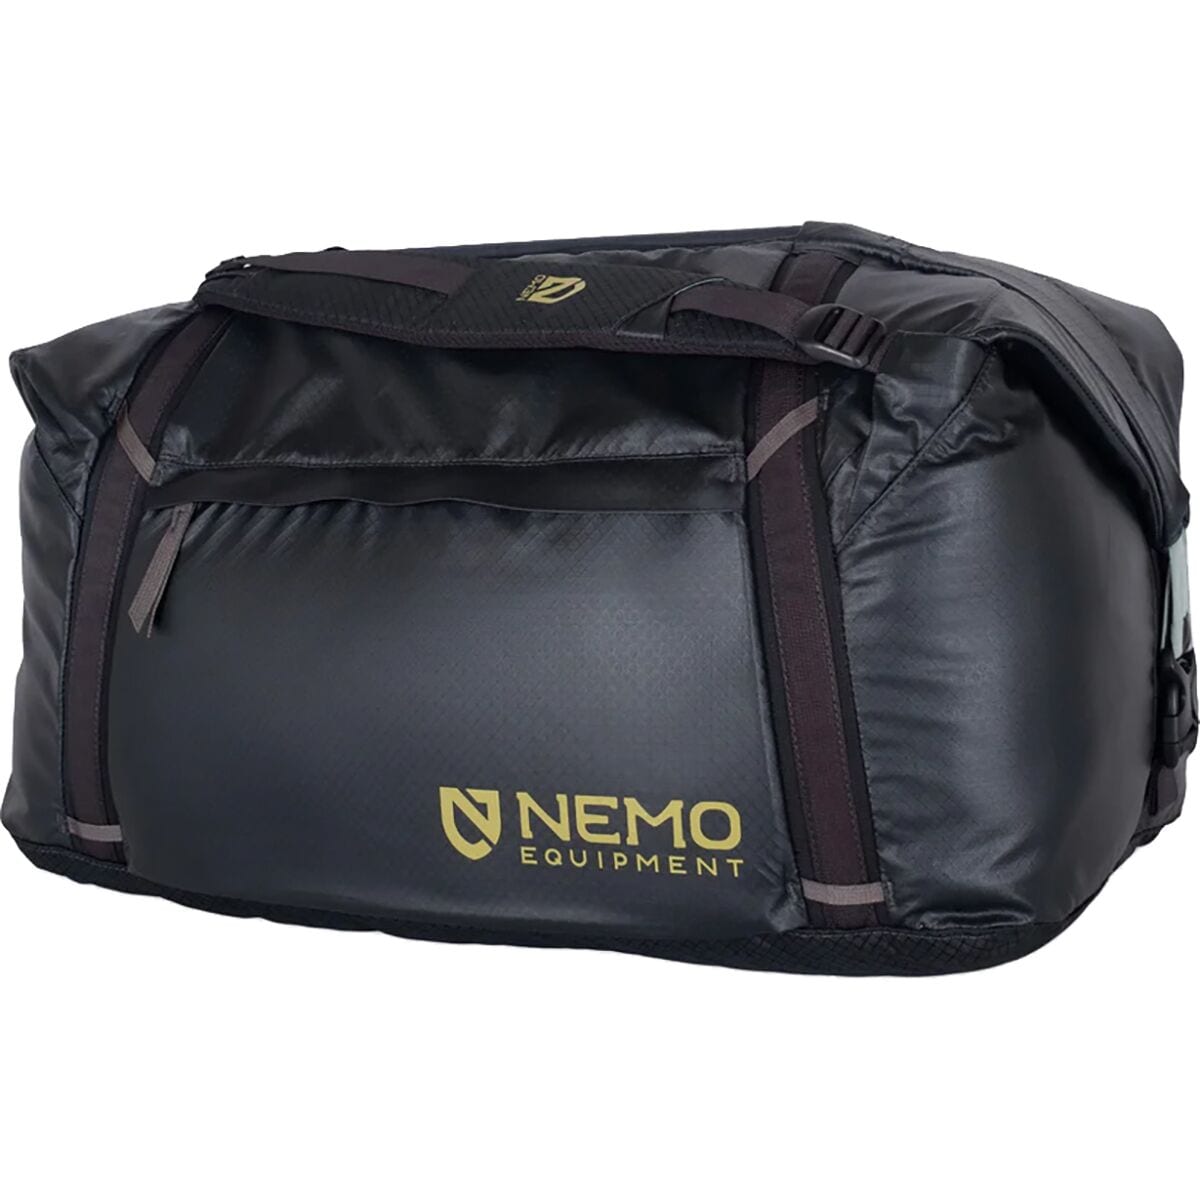 Двойная трансформируемая спортивная сумка объемом 70 л Nemo Equipment Inc., черный